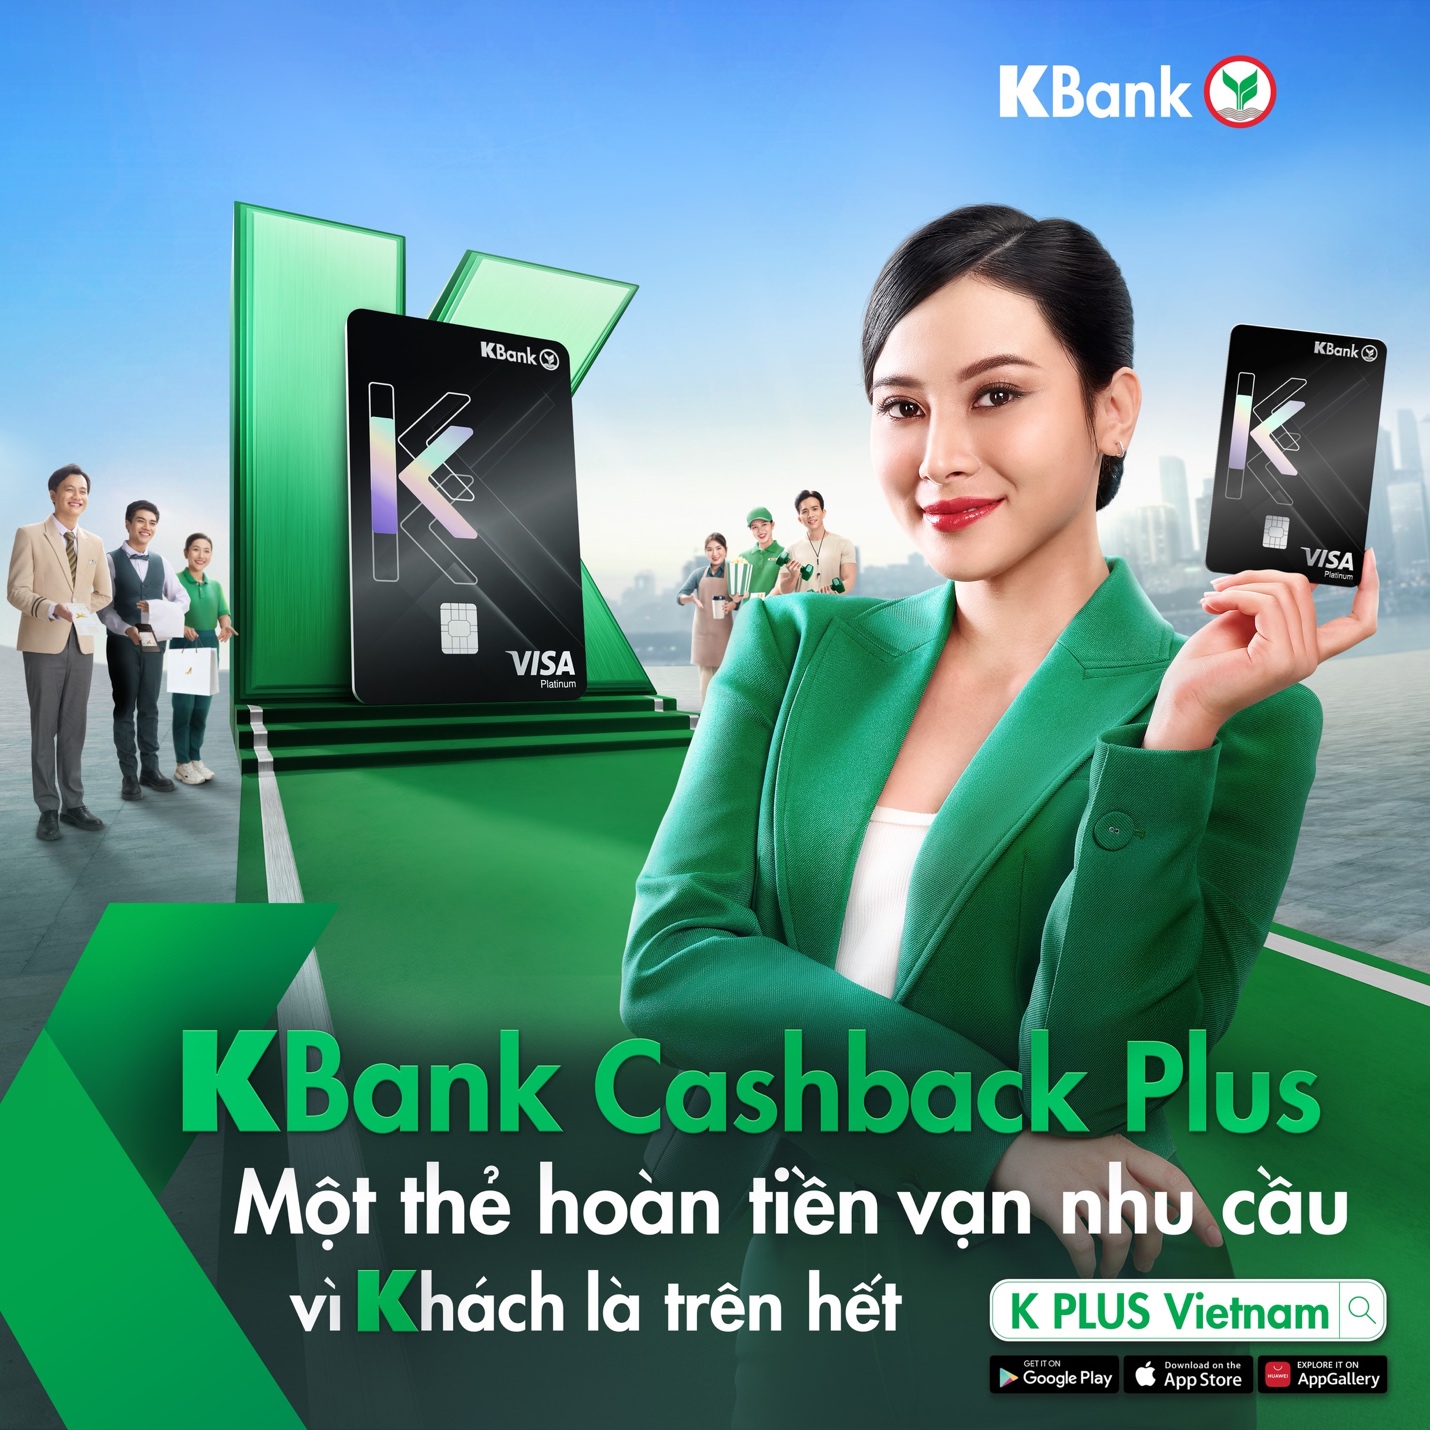 “Vì khách là trên hết” - Triết lý kinh doanh được KBank mang đến Việt Nam- Ảnh 2.